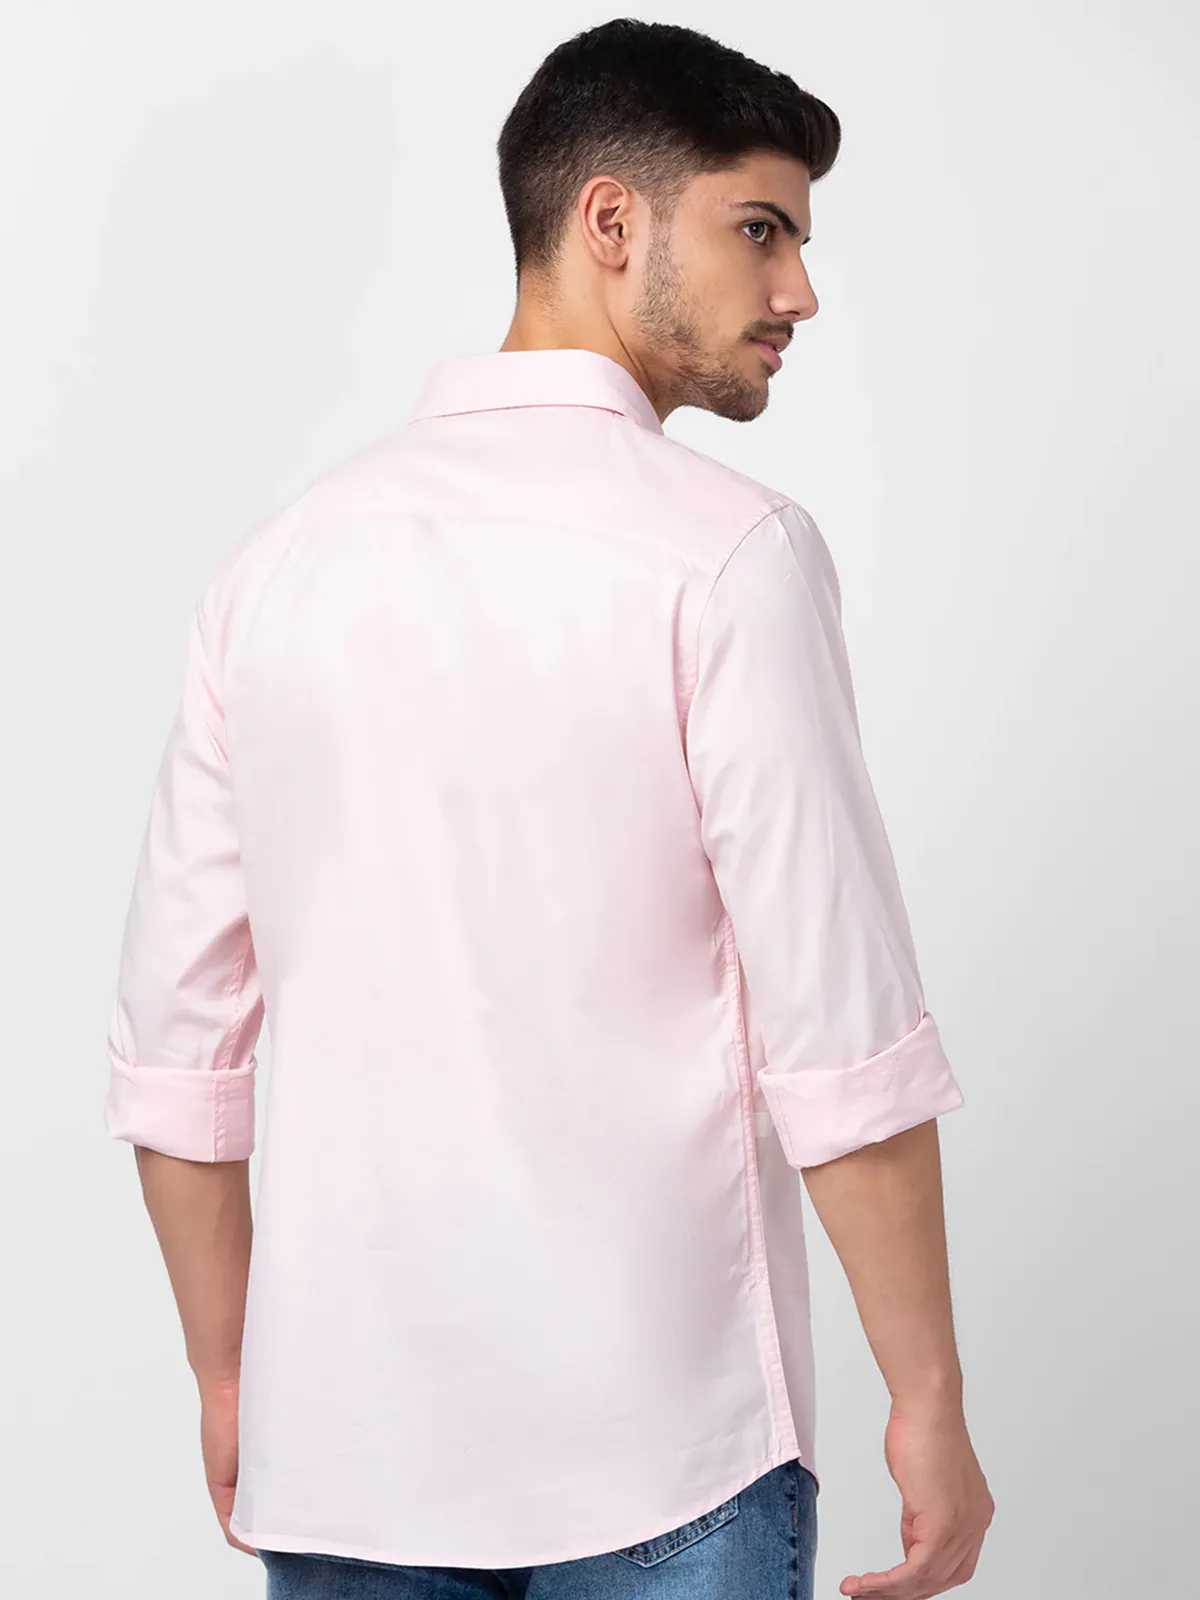 Spykar light pink cotton plain shirt